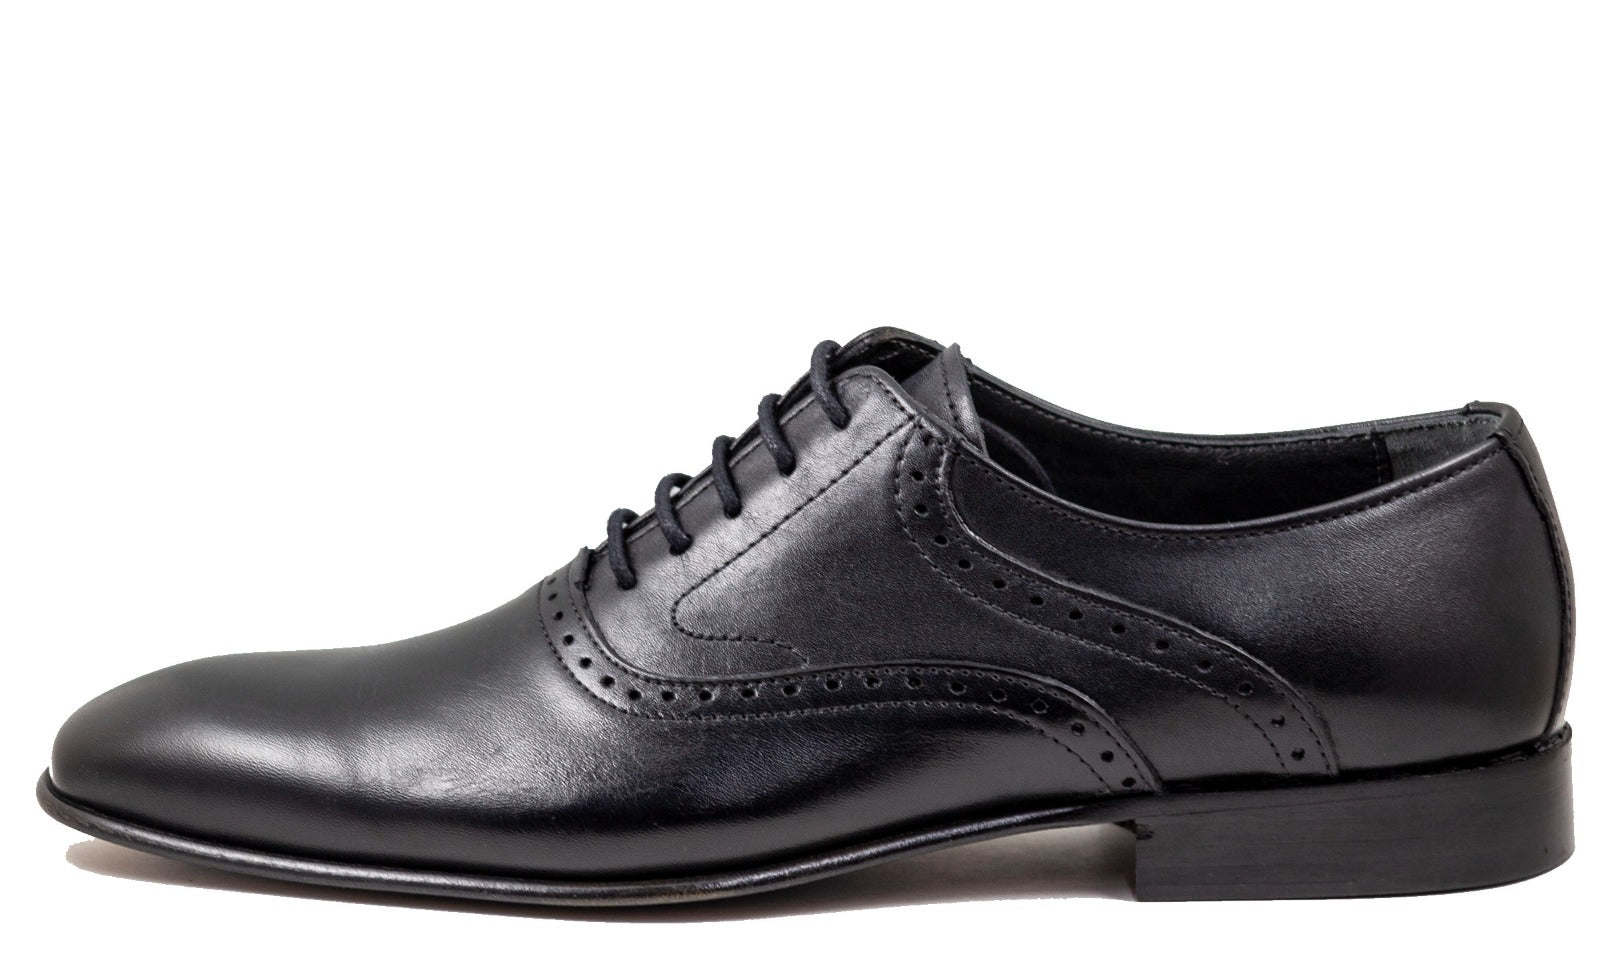 Mirage Men's Dress Black Leather Shoes 6312